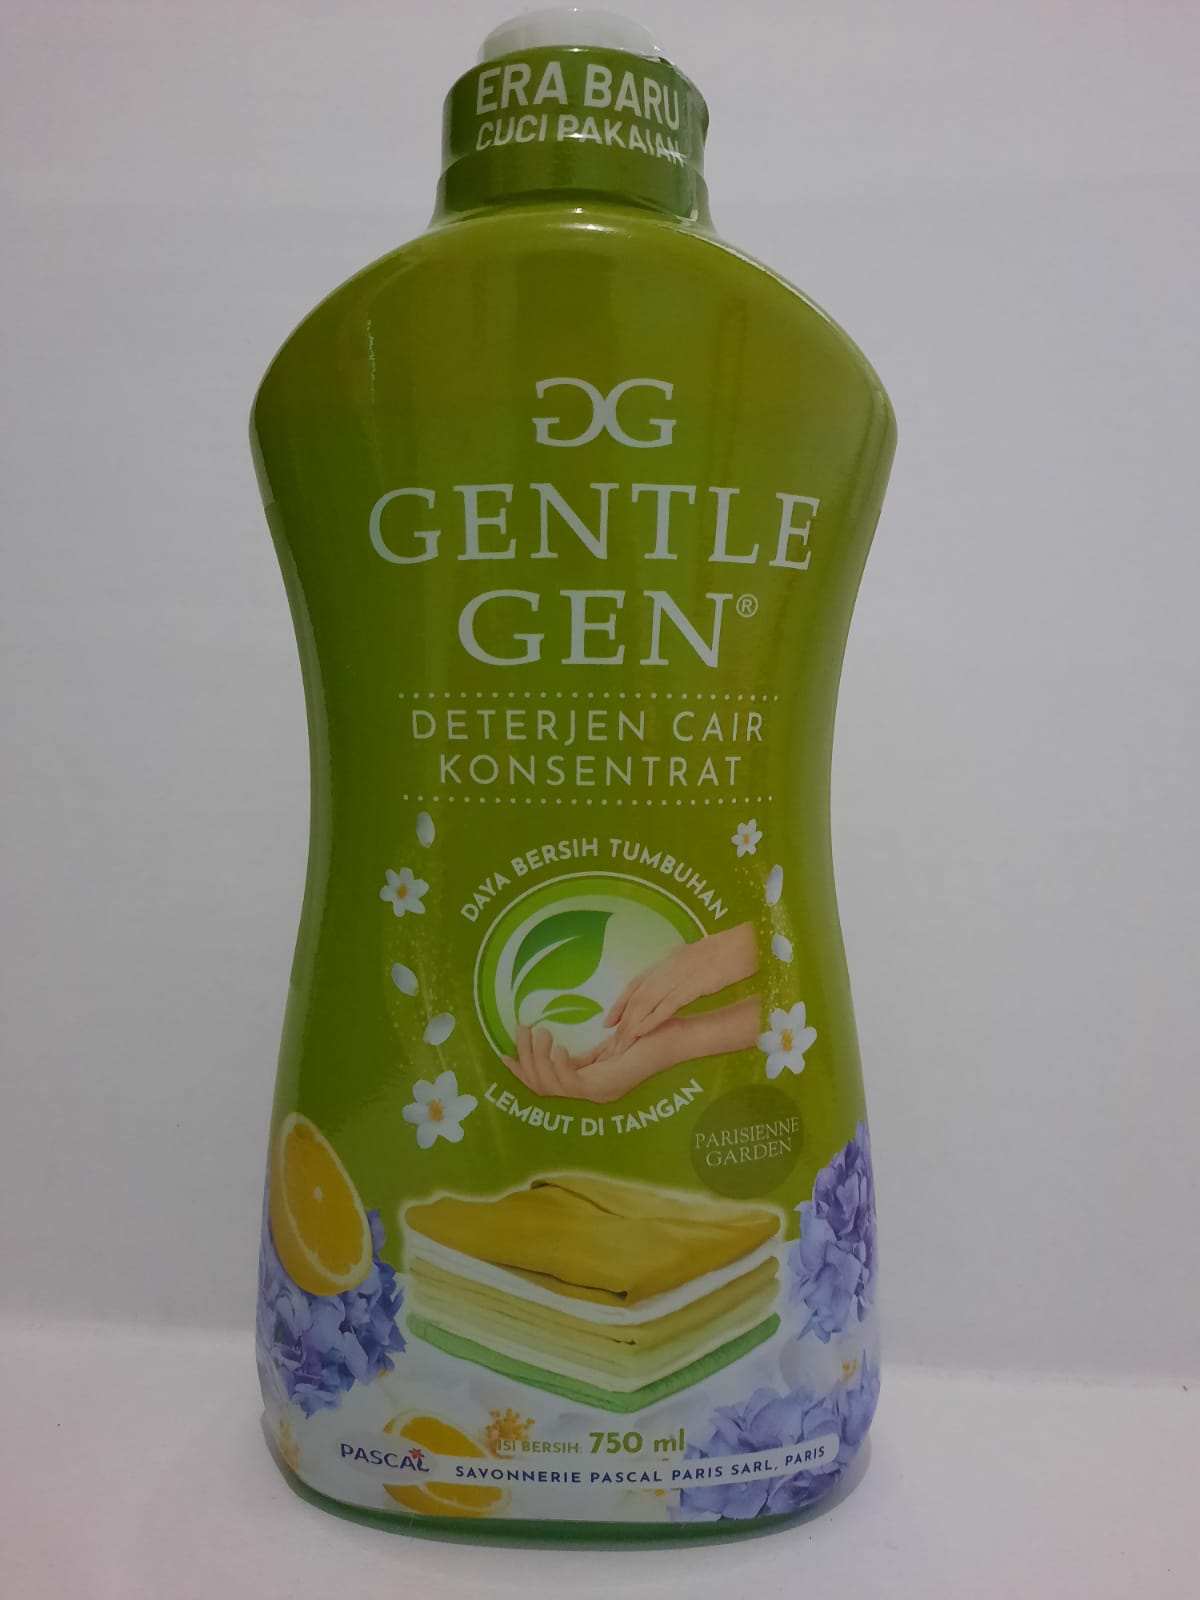 Gentle gen